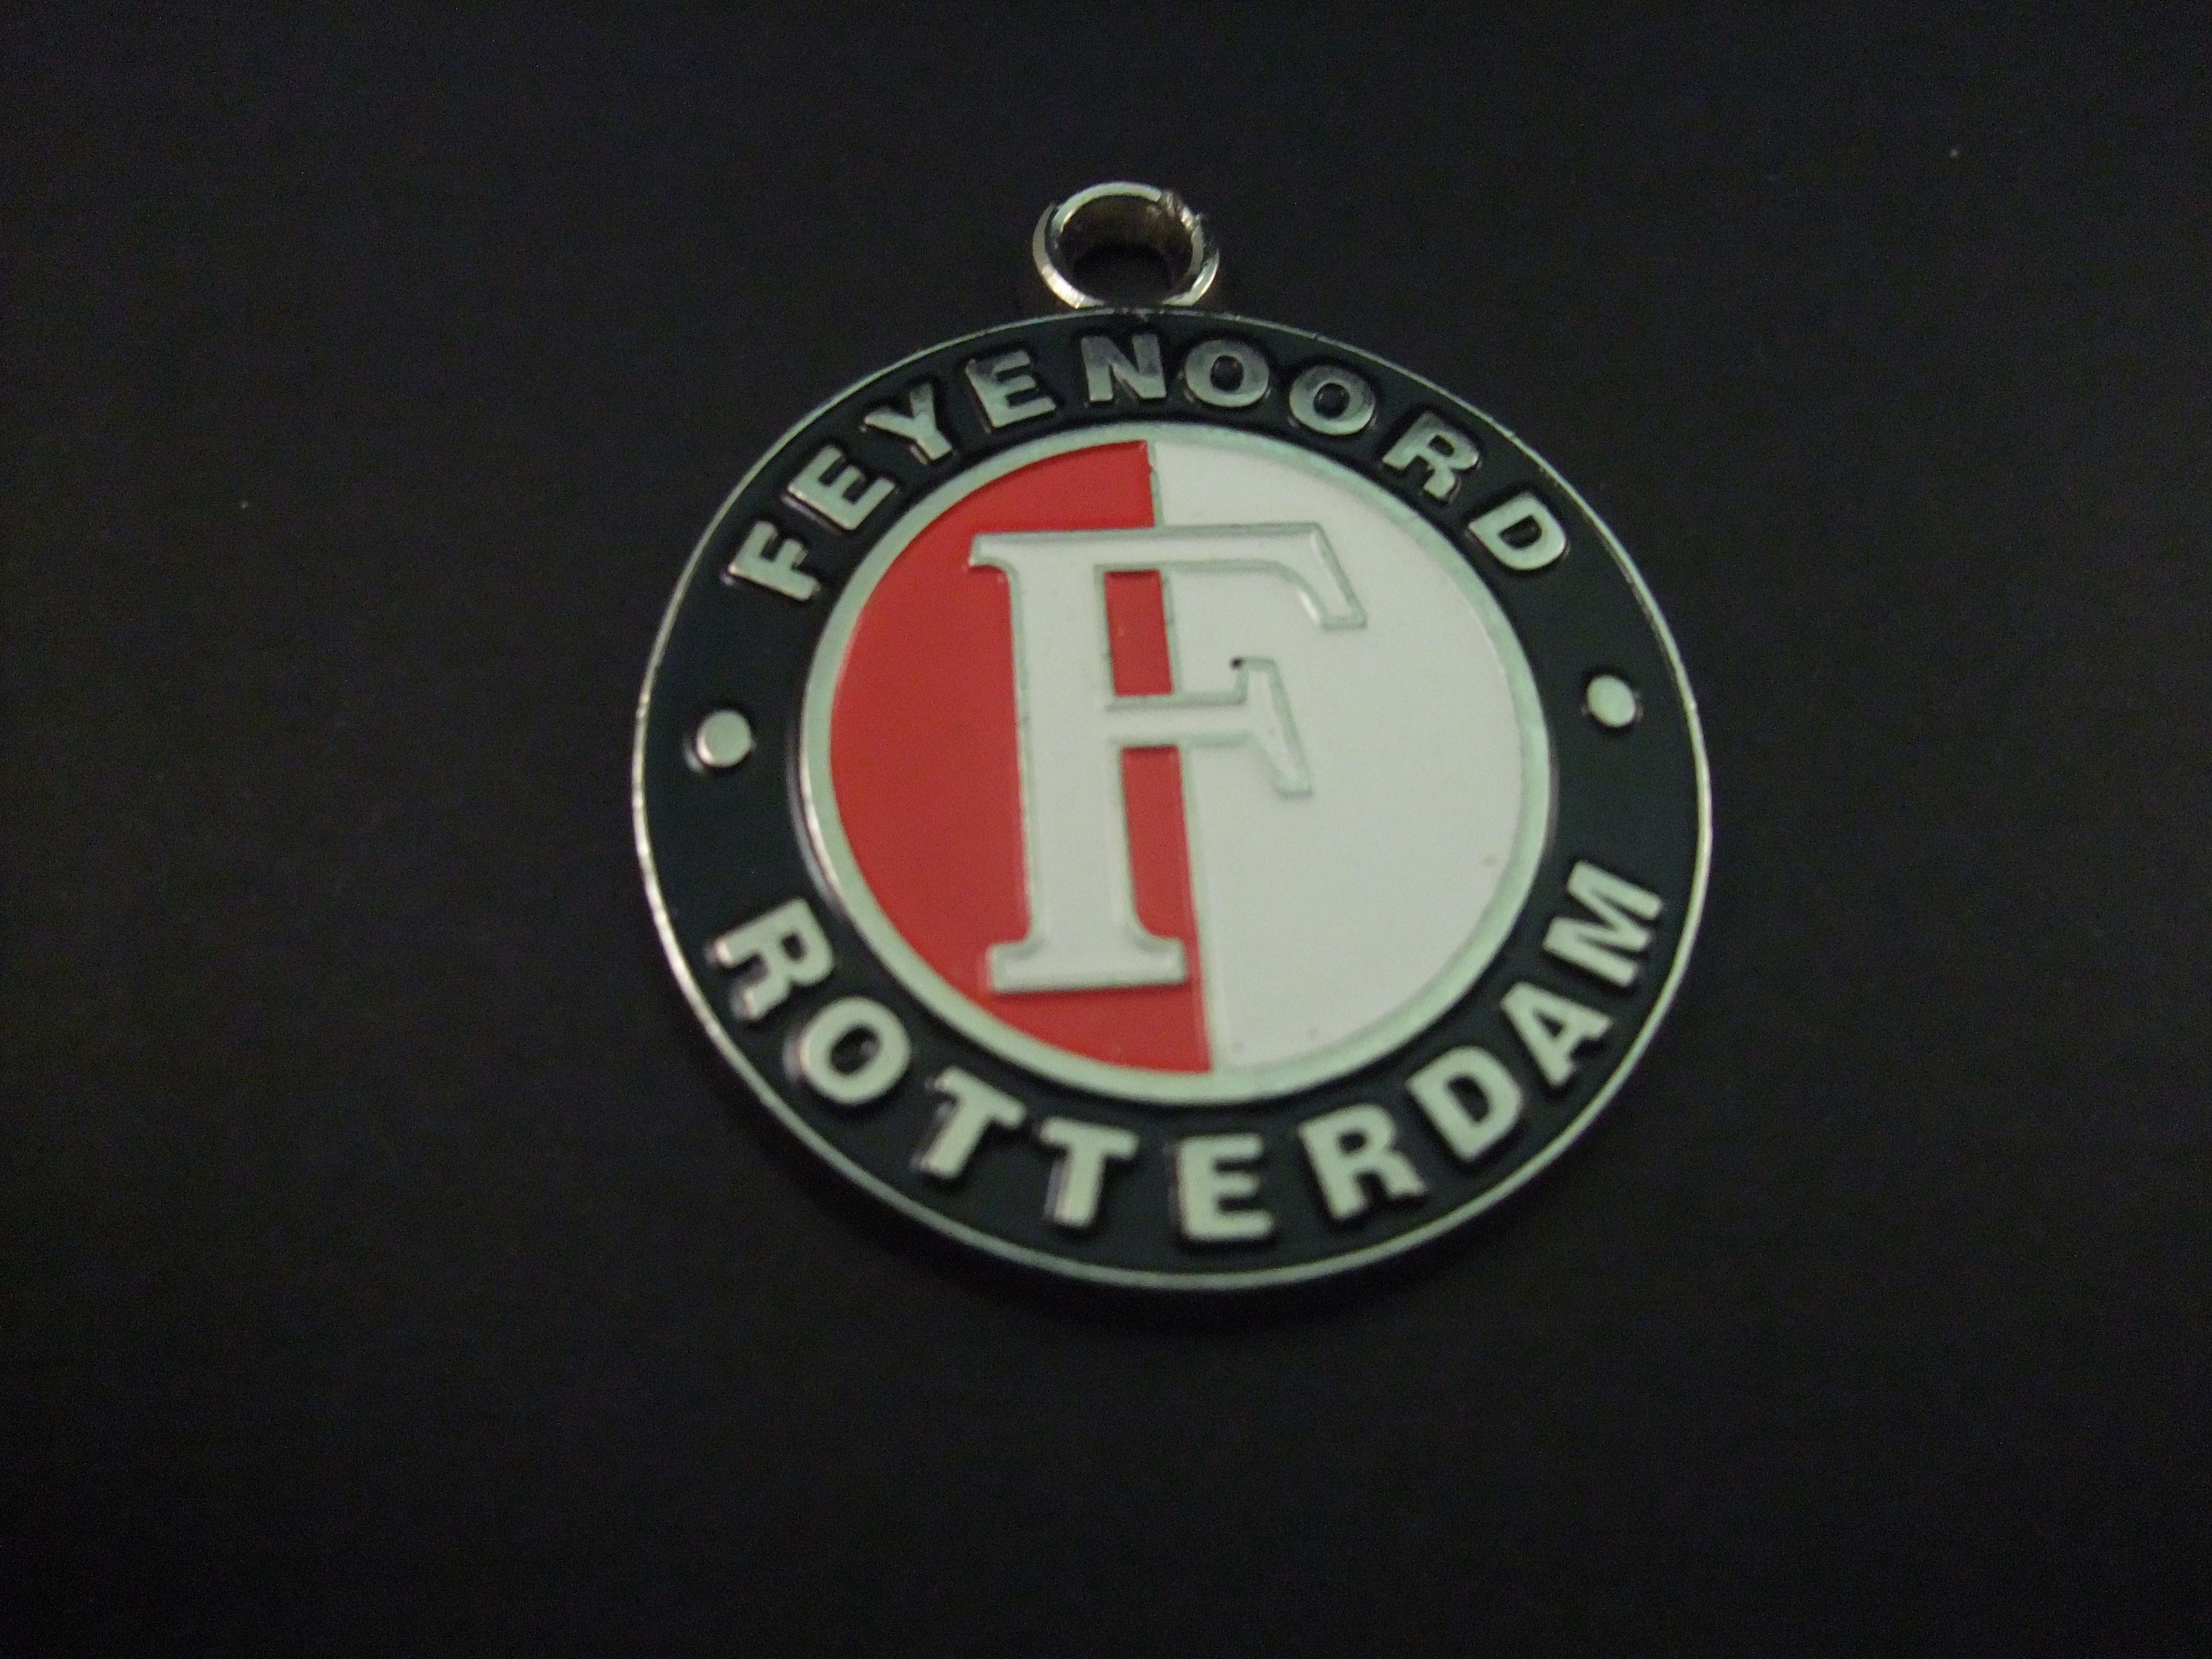 Feyenoord Rotterdam official Feyenoord licensed product